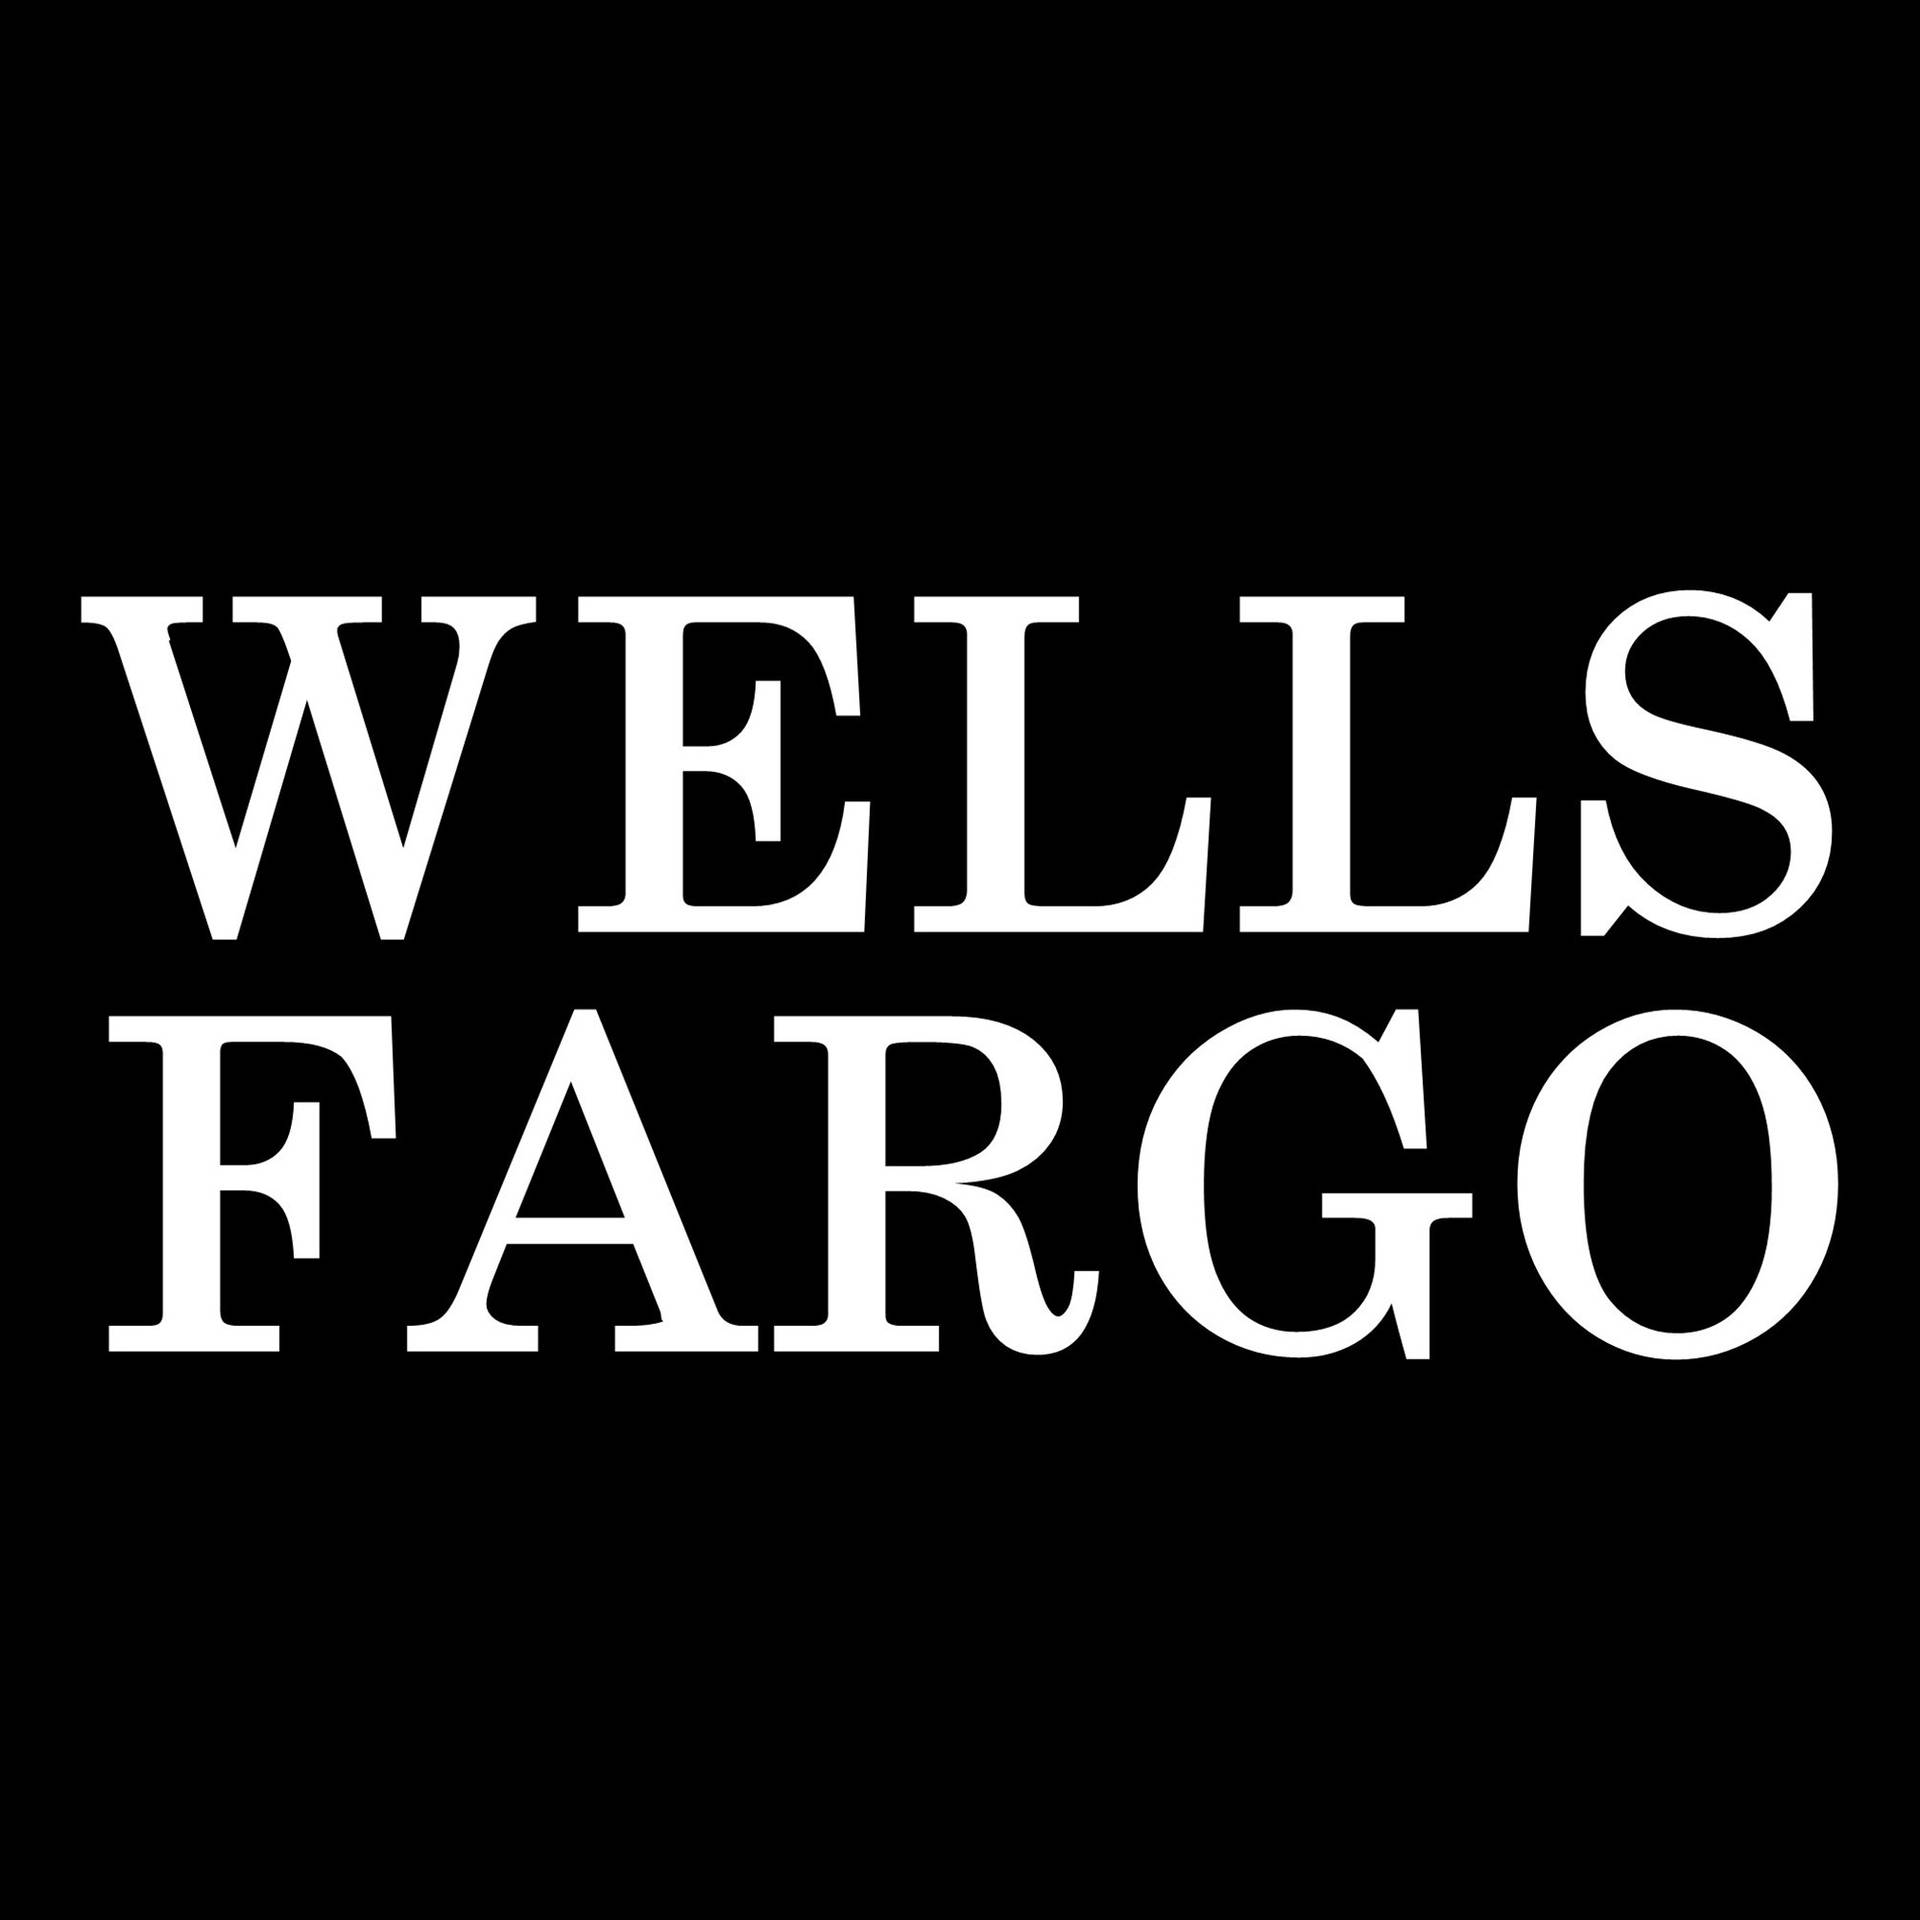 Logowells Fargo In Bianco E Nero Sfondo